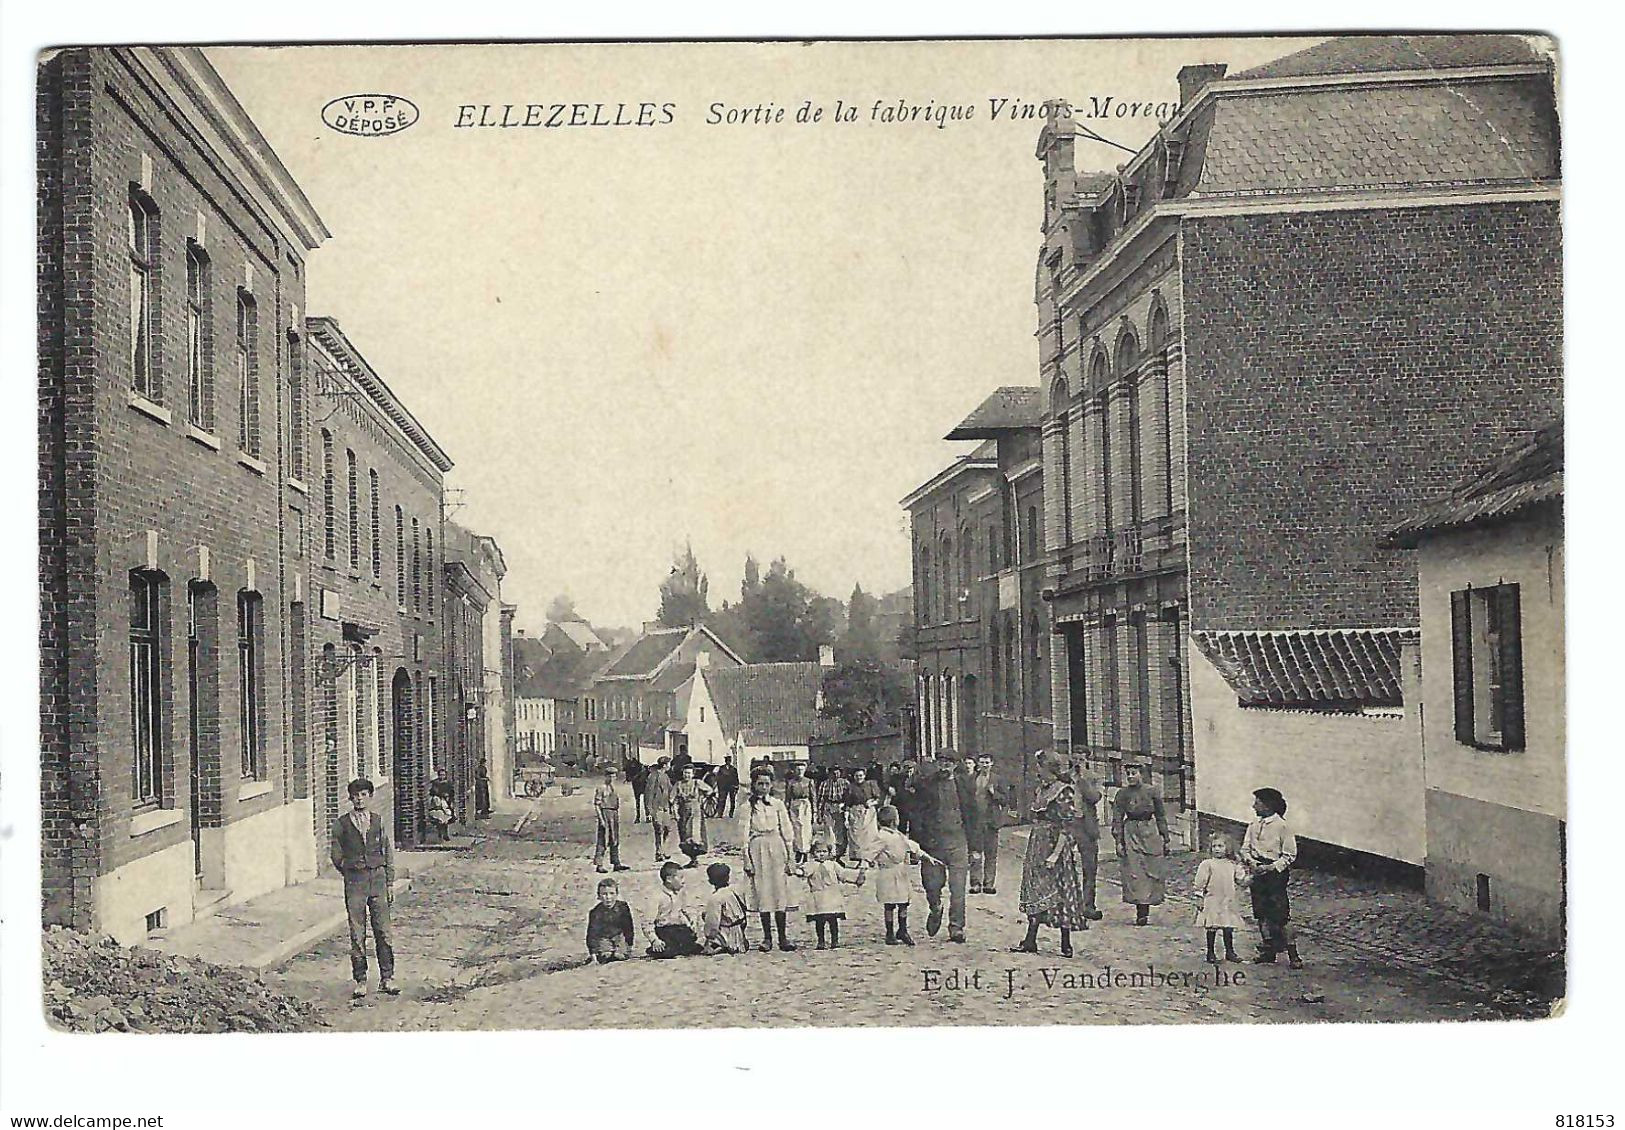 ELLEZELLES  Sortie De La Fabrique Vinois-Moreau 1911 - Ellezelles